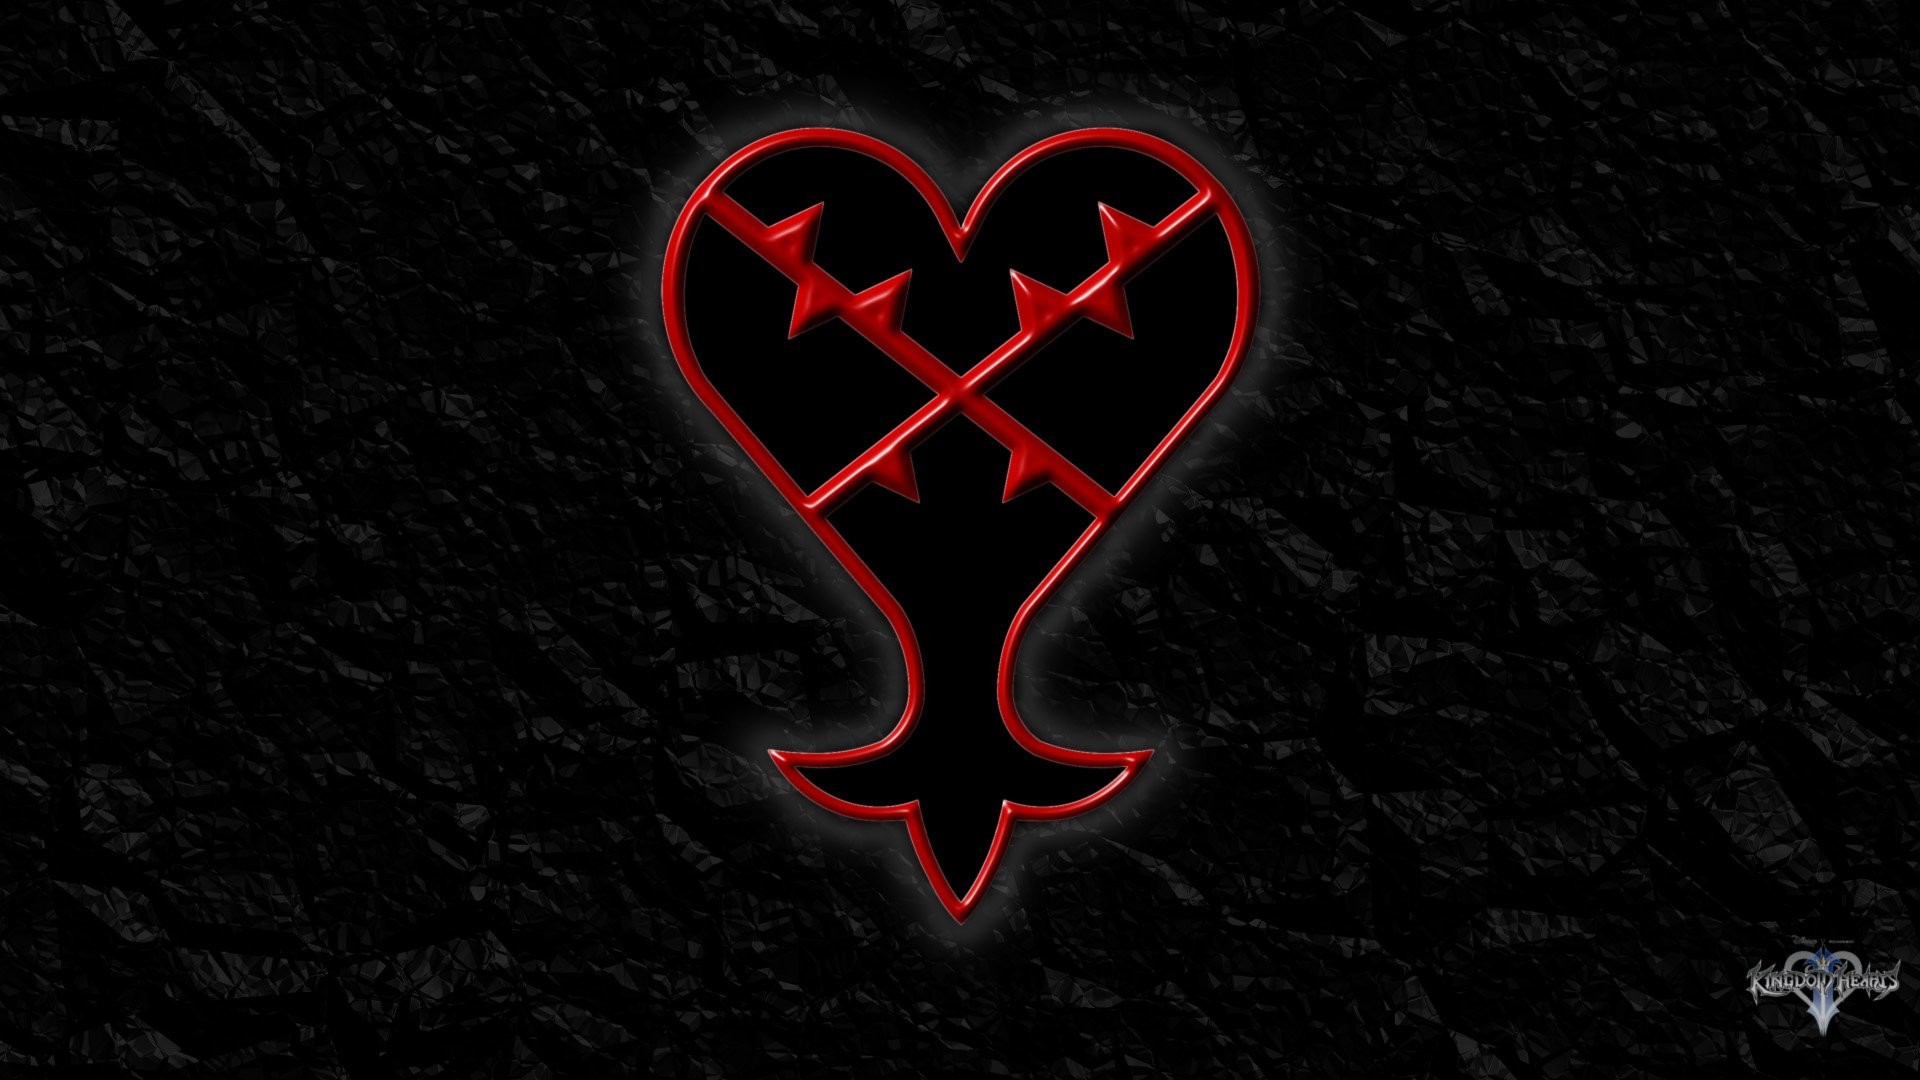 Kingdom Hearts Heartless Symbol